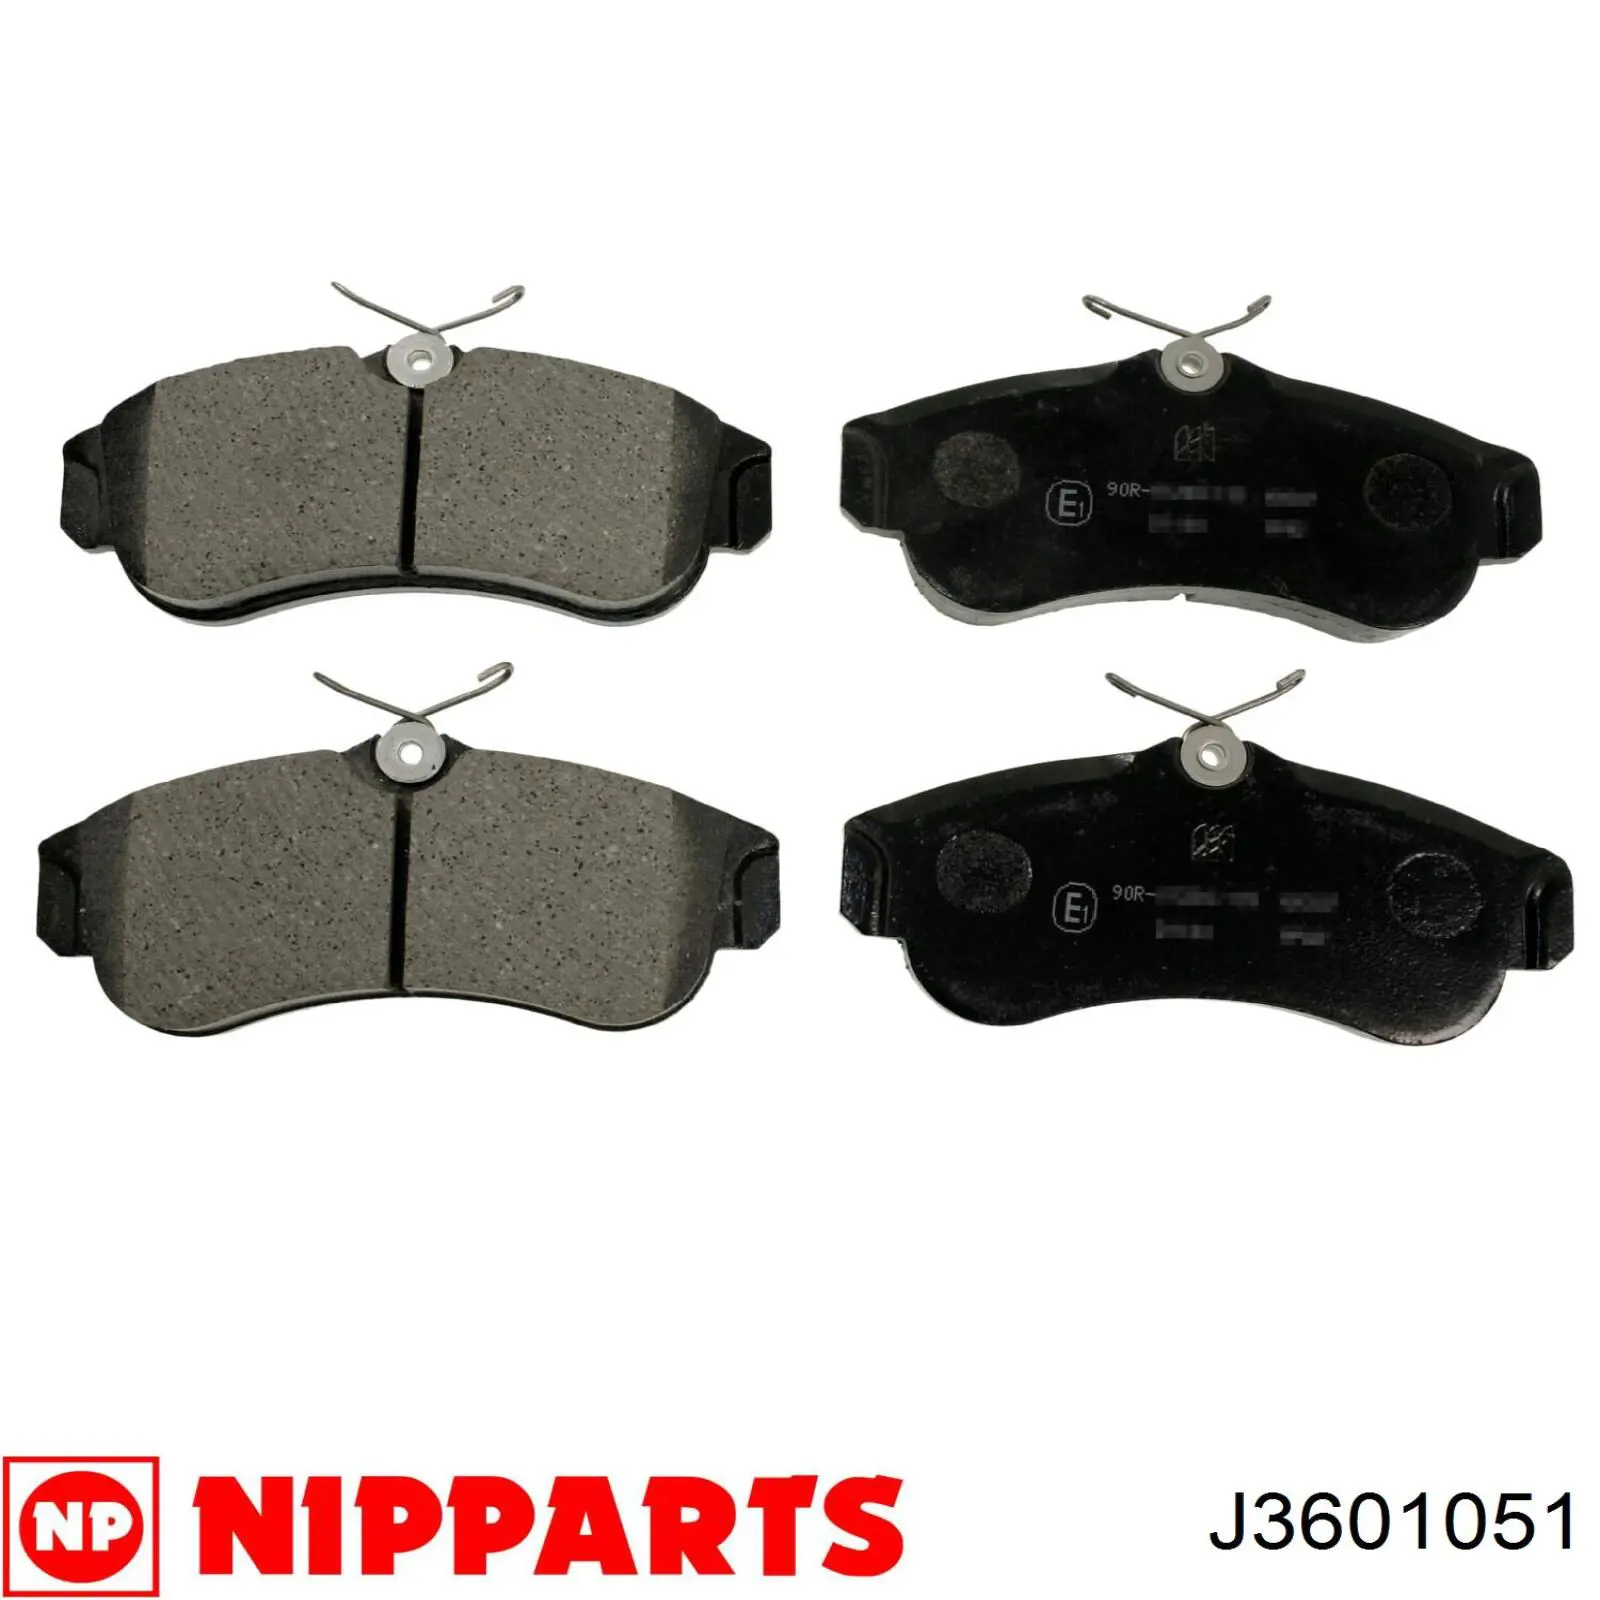 J3601051 Nipparts колодки тормозные передние дисковые